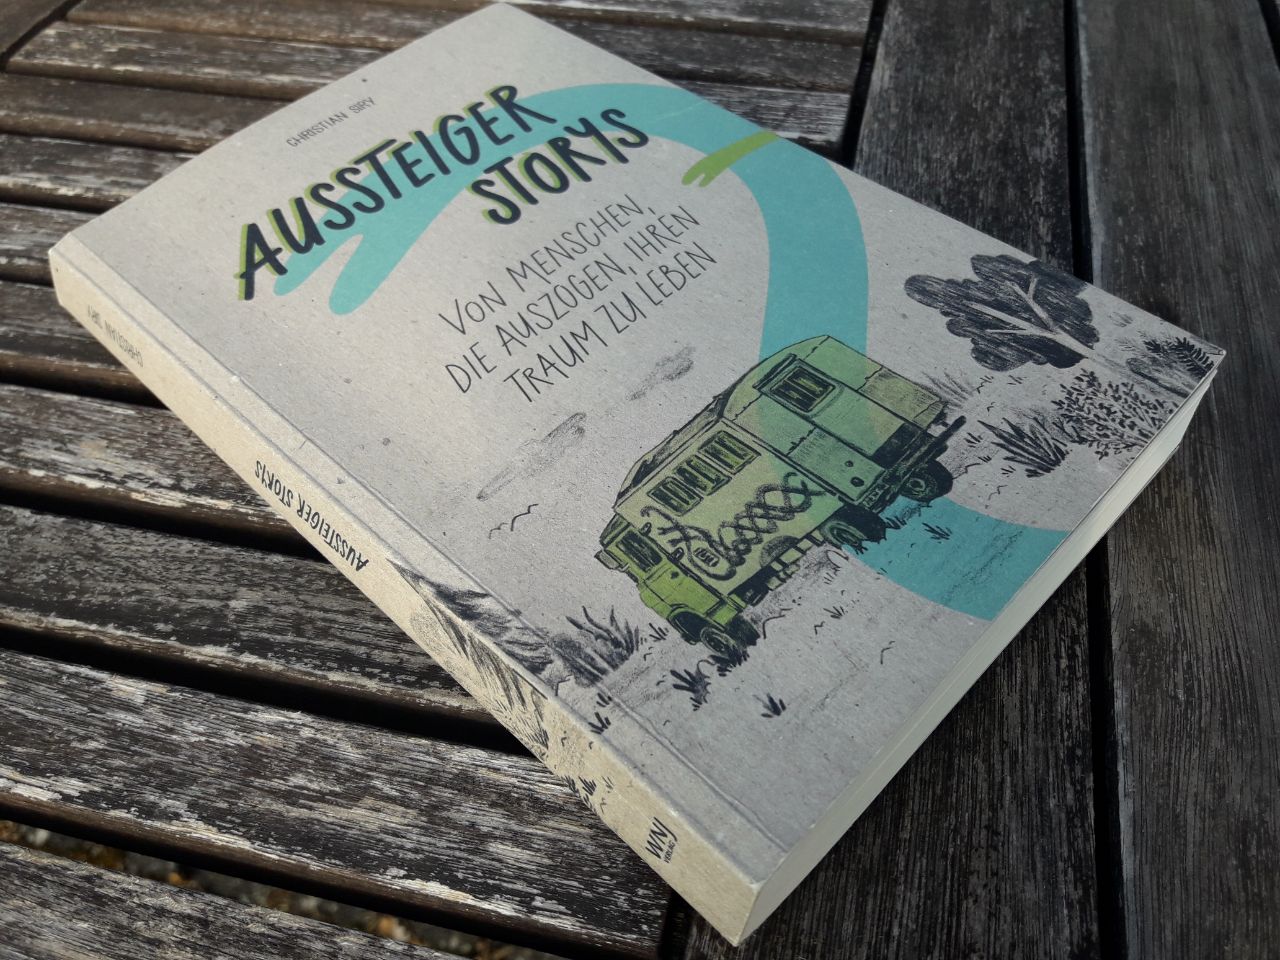 Cover des Buches "Aussteiger Storys" Unter dem Titel ist eine Illustration, die einen hellgrünen Campervan zeigt